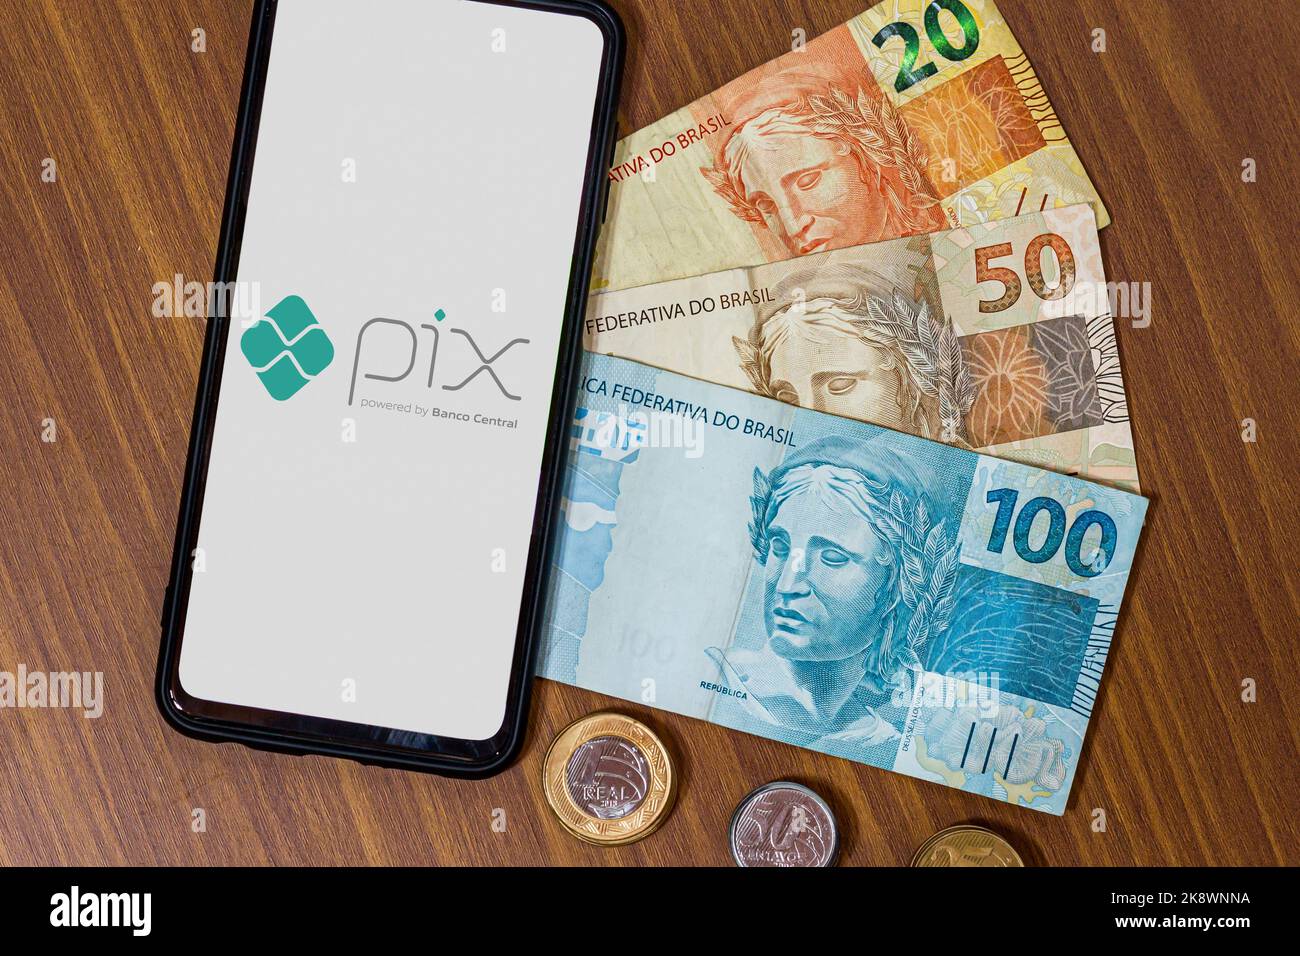 Sao Paulo, Brasil. 8 DE MARZO de 2022: Logotipo PIX en la pantalla del smartphone con varias monedas. PIX es el nuevo sistema de pagos y transferencias de Brazilia Foto de stock